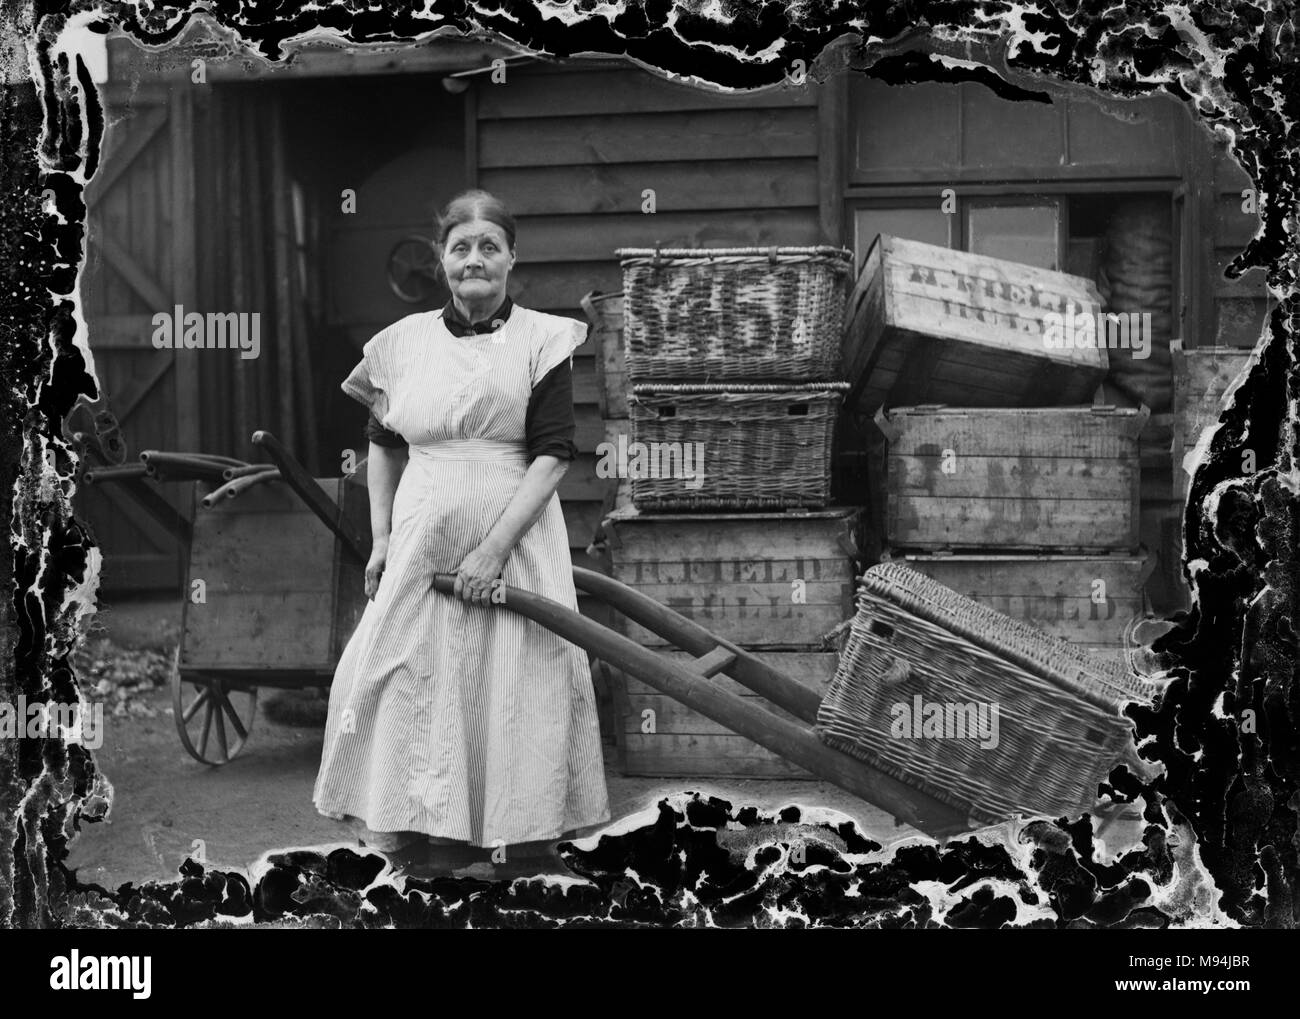 Femme au travail dans les rues de Londres est illustré dans un négatif sur verre avec des dommages sur le bord encadrant le sujet, ca. 1910. Banque D'Images